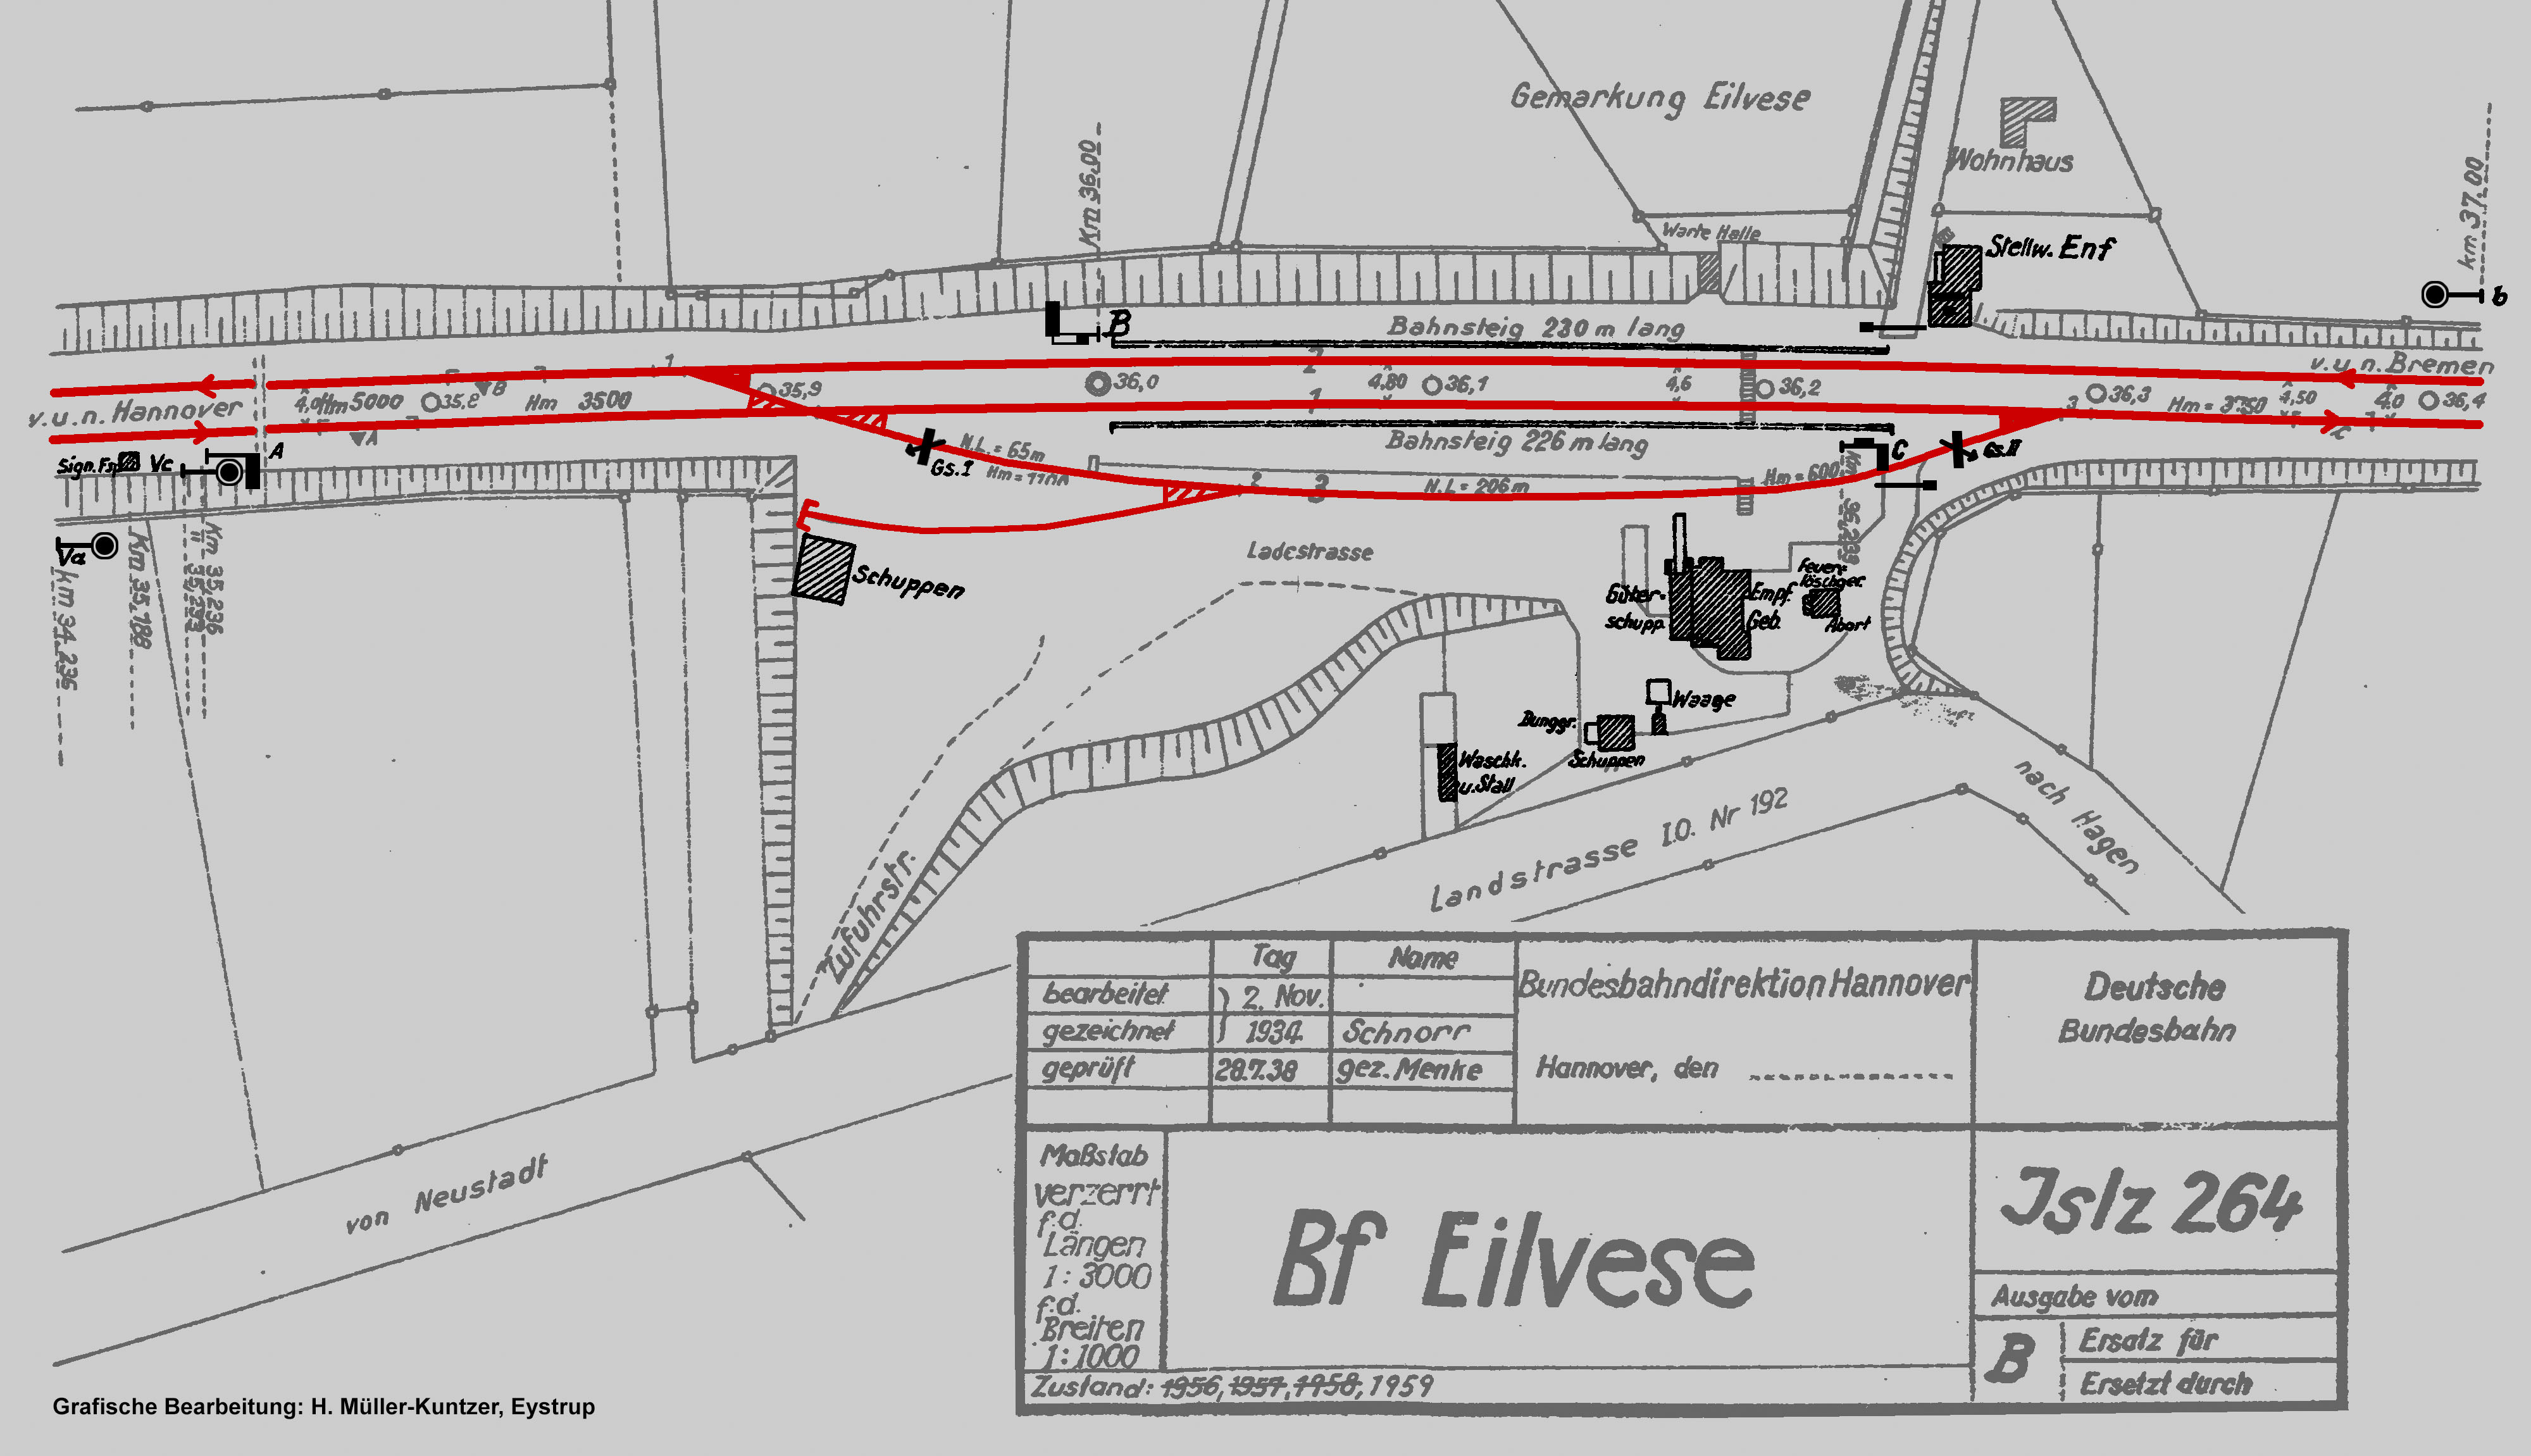 Gleisplan des Bahnhofs Eilvese von 1959